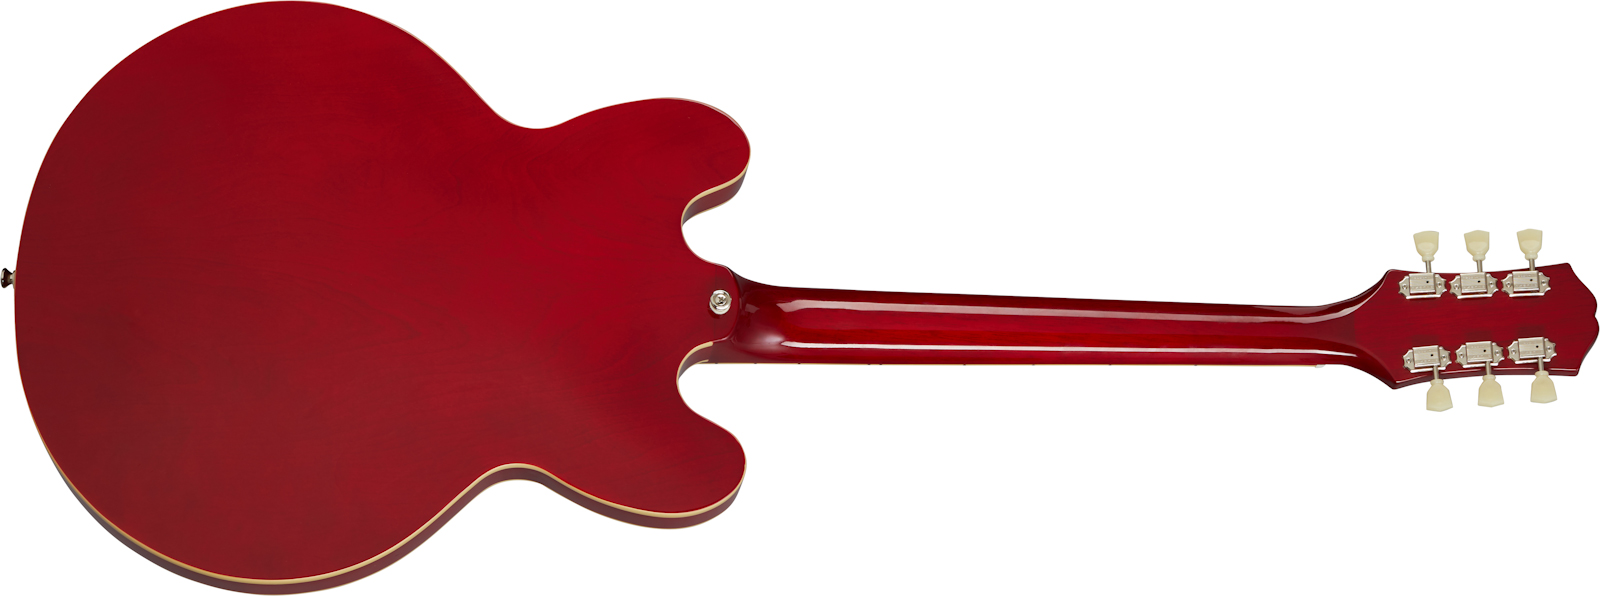 Epiphone Es-335 Lh Inspired By Gibson Original Gaucher 2h Ht Rw - Cherry - Linkshandige elektrische gitaar - Variation 1